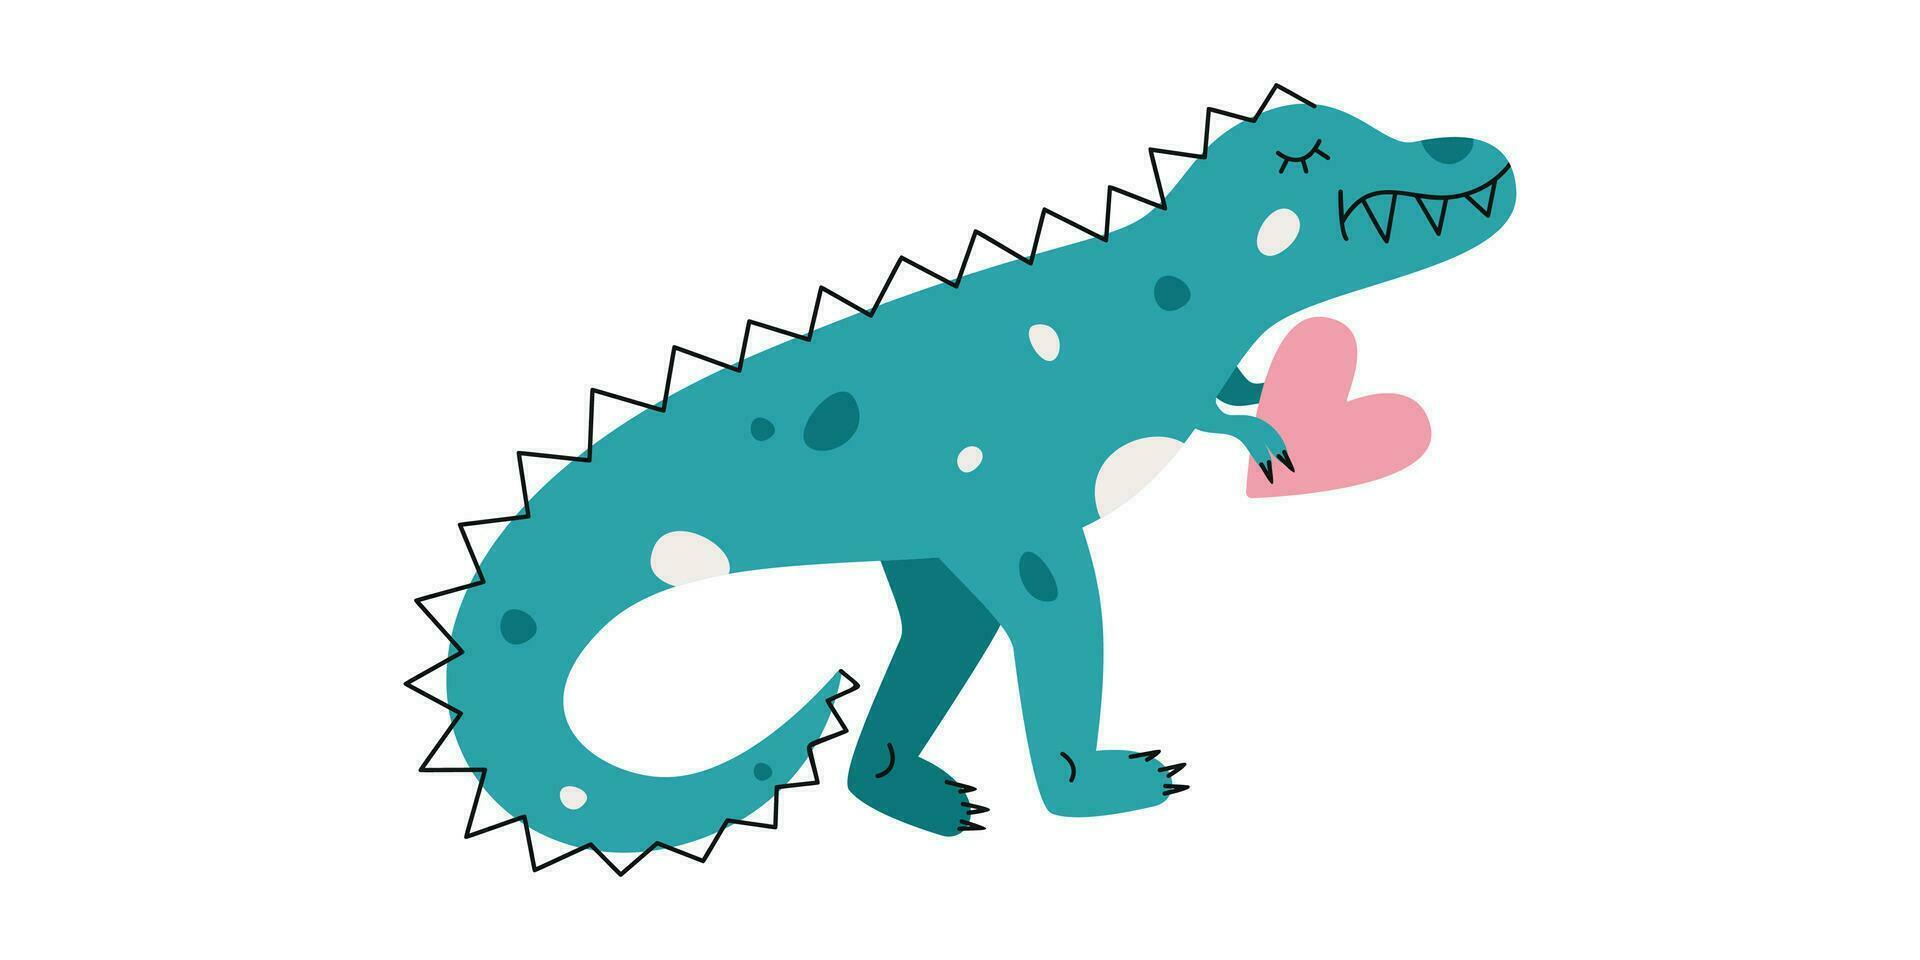 piatto mano disegnato vettore illustrazione di tirannosauro dinosauro